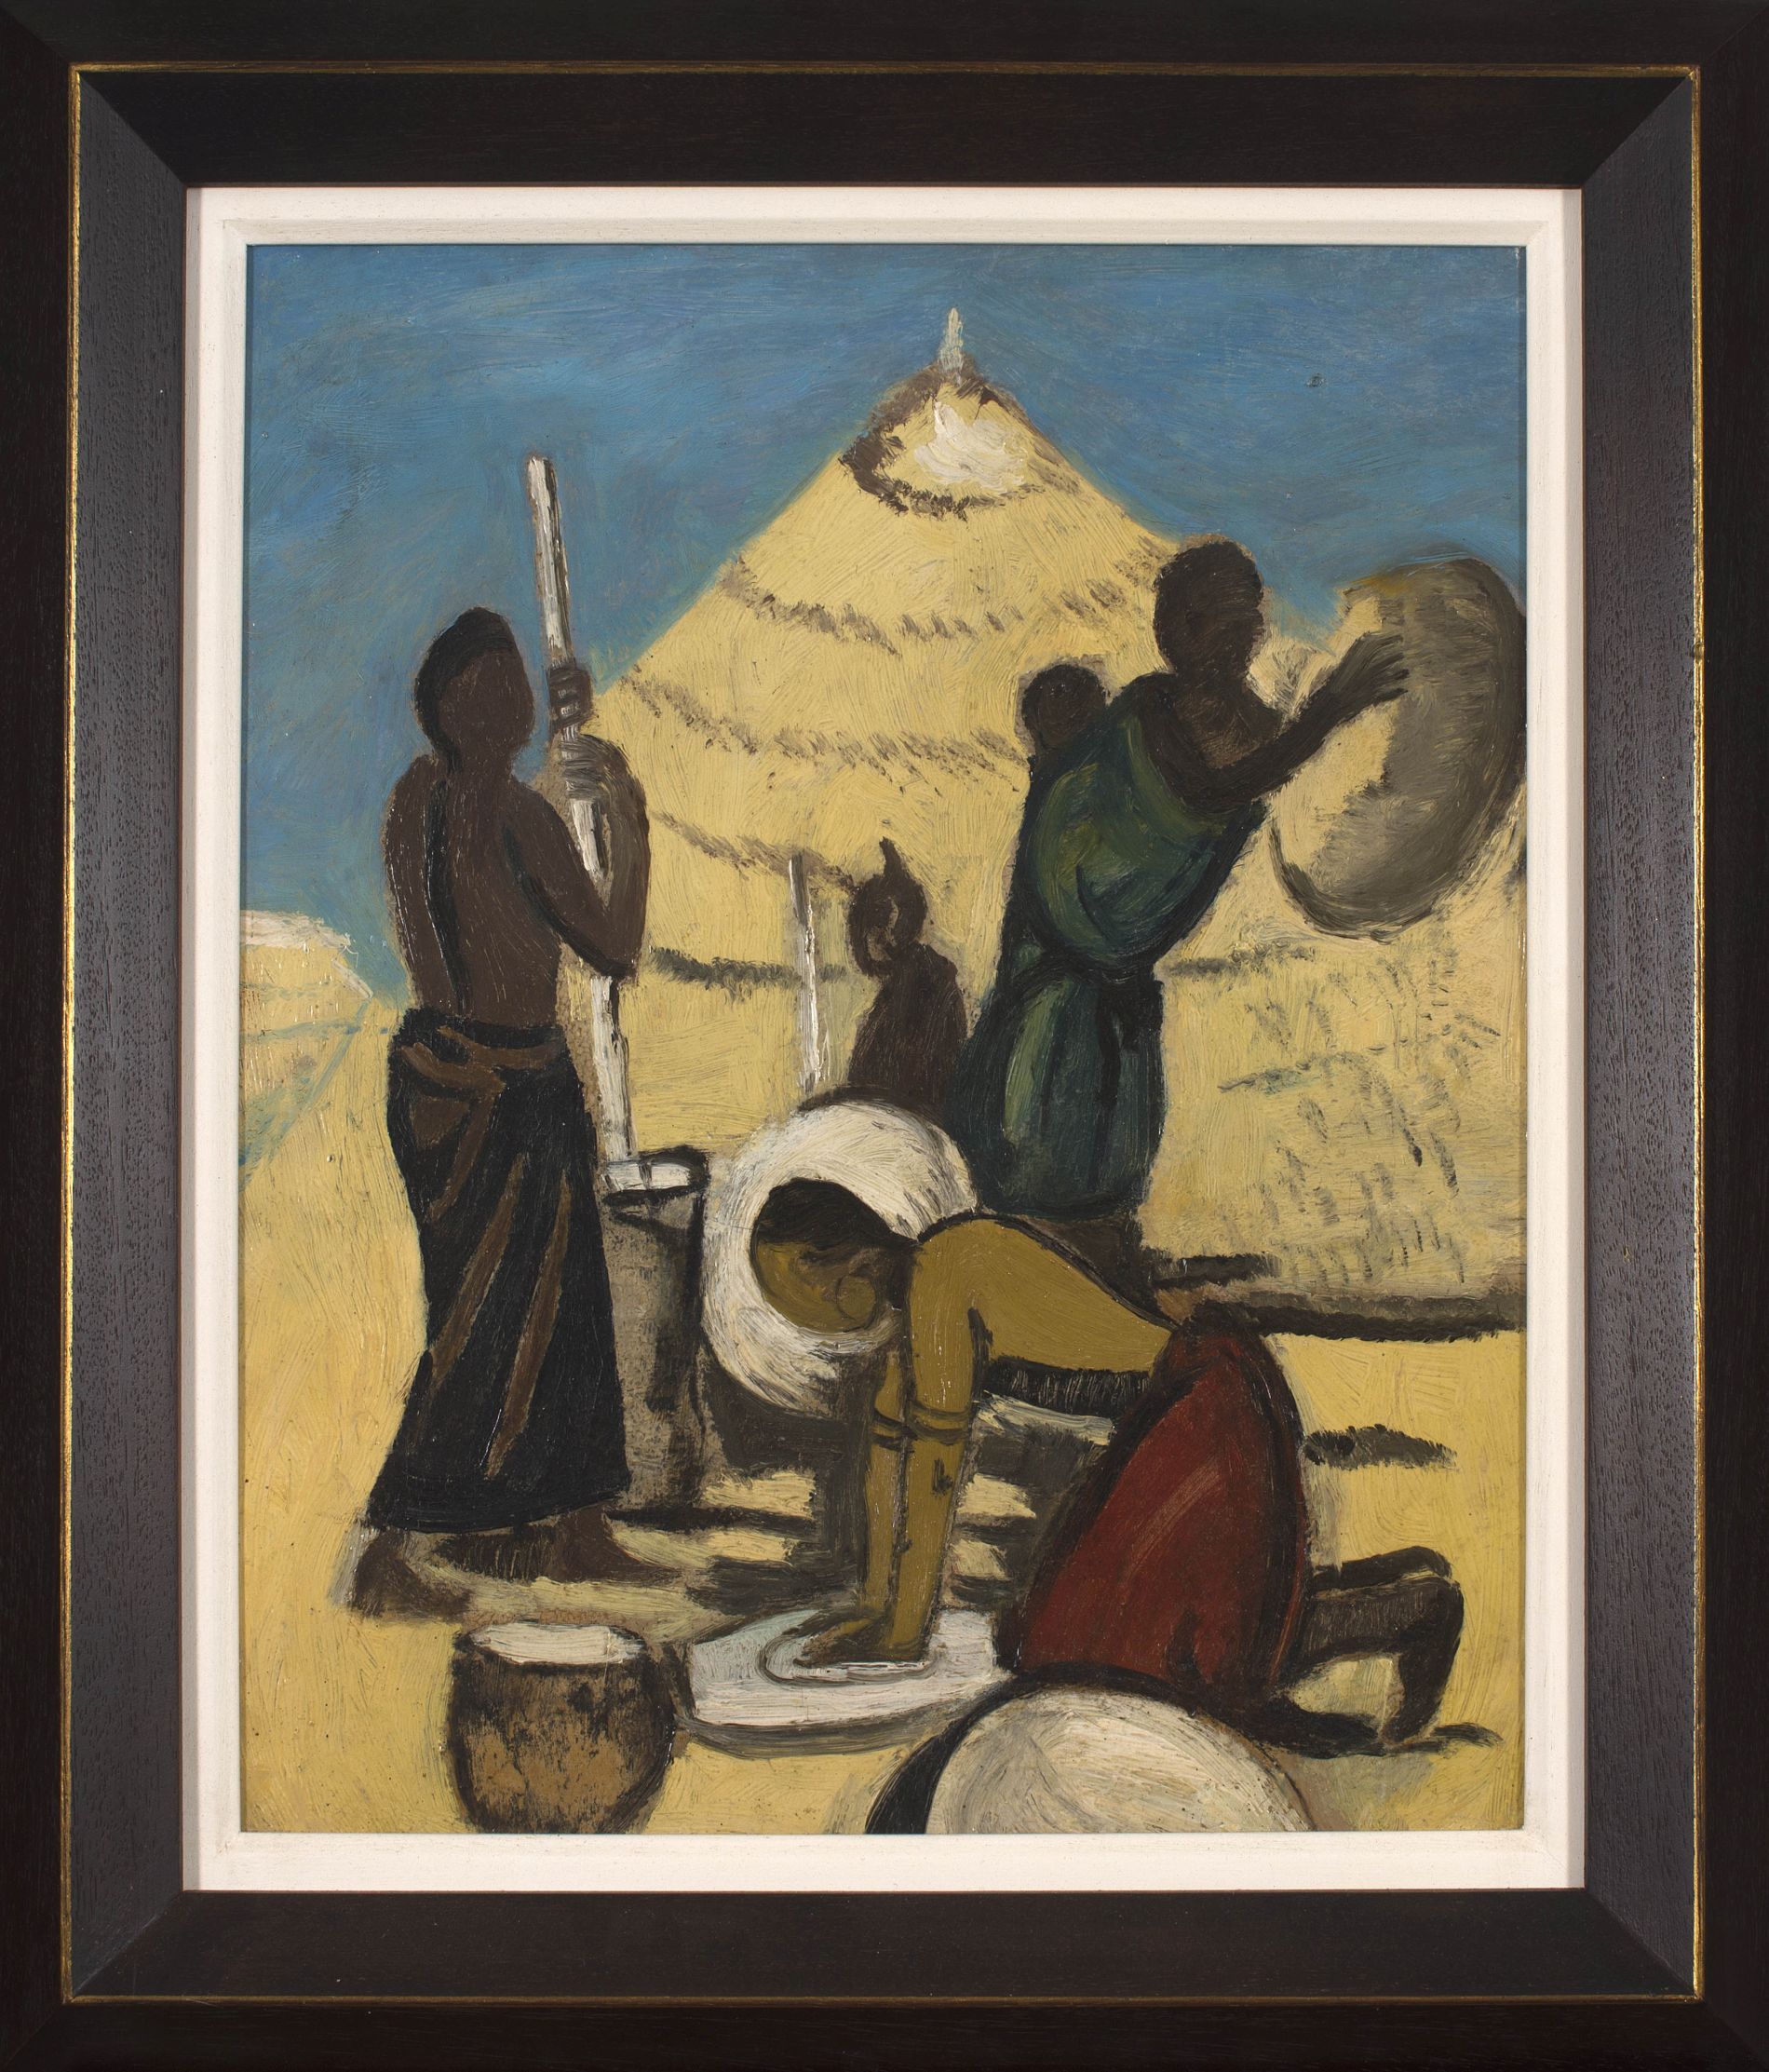 Pranas Domsaitis; Bantu Women Grinding Mealies, recto; Abstract Composition, verso